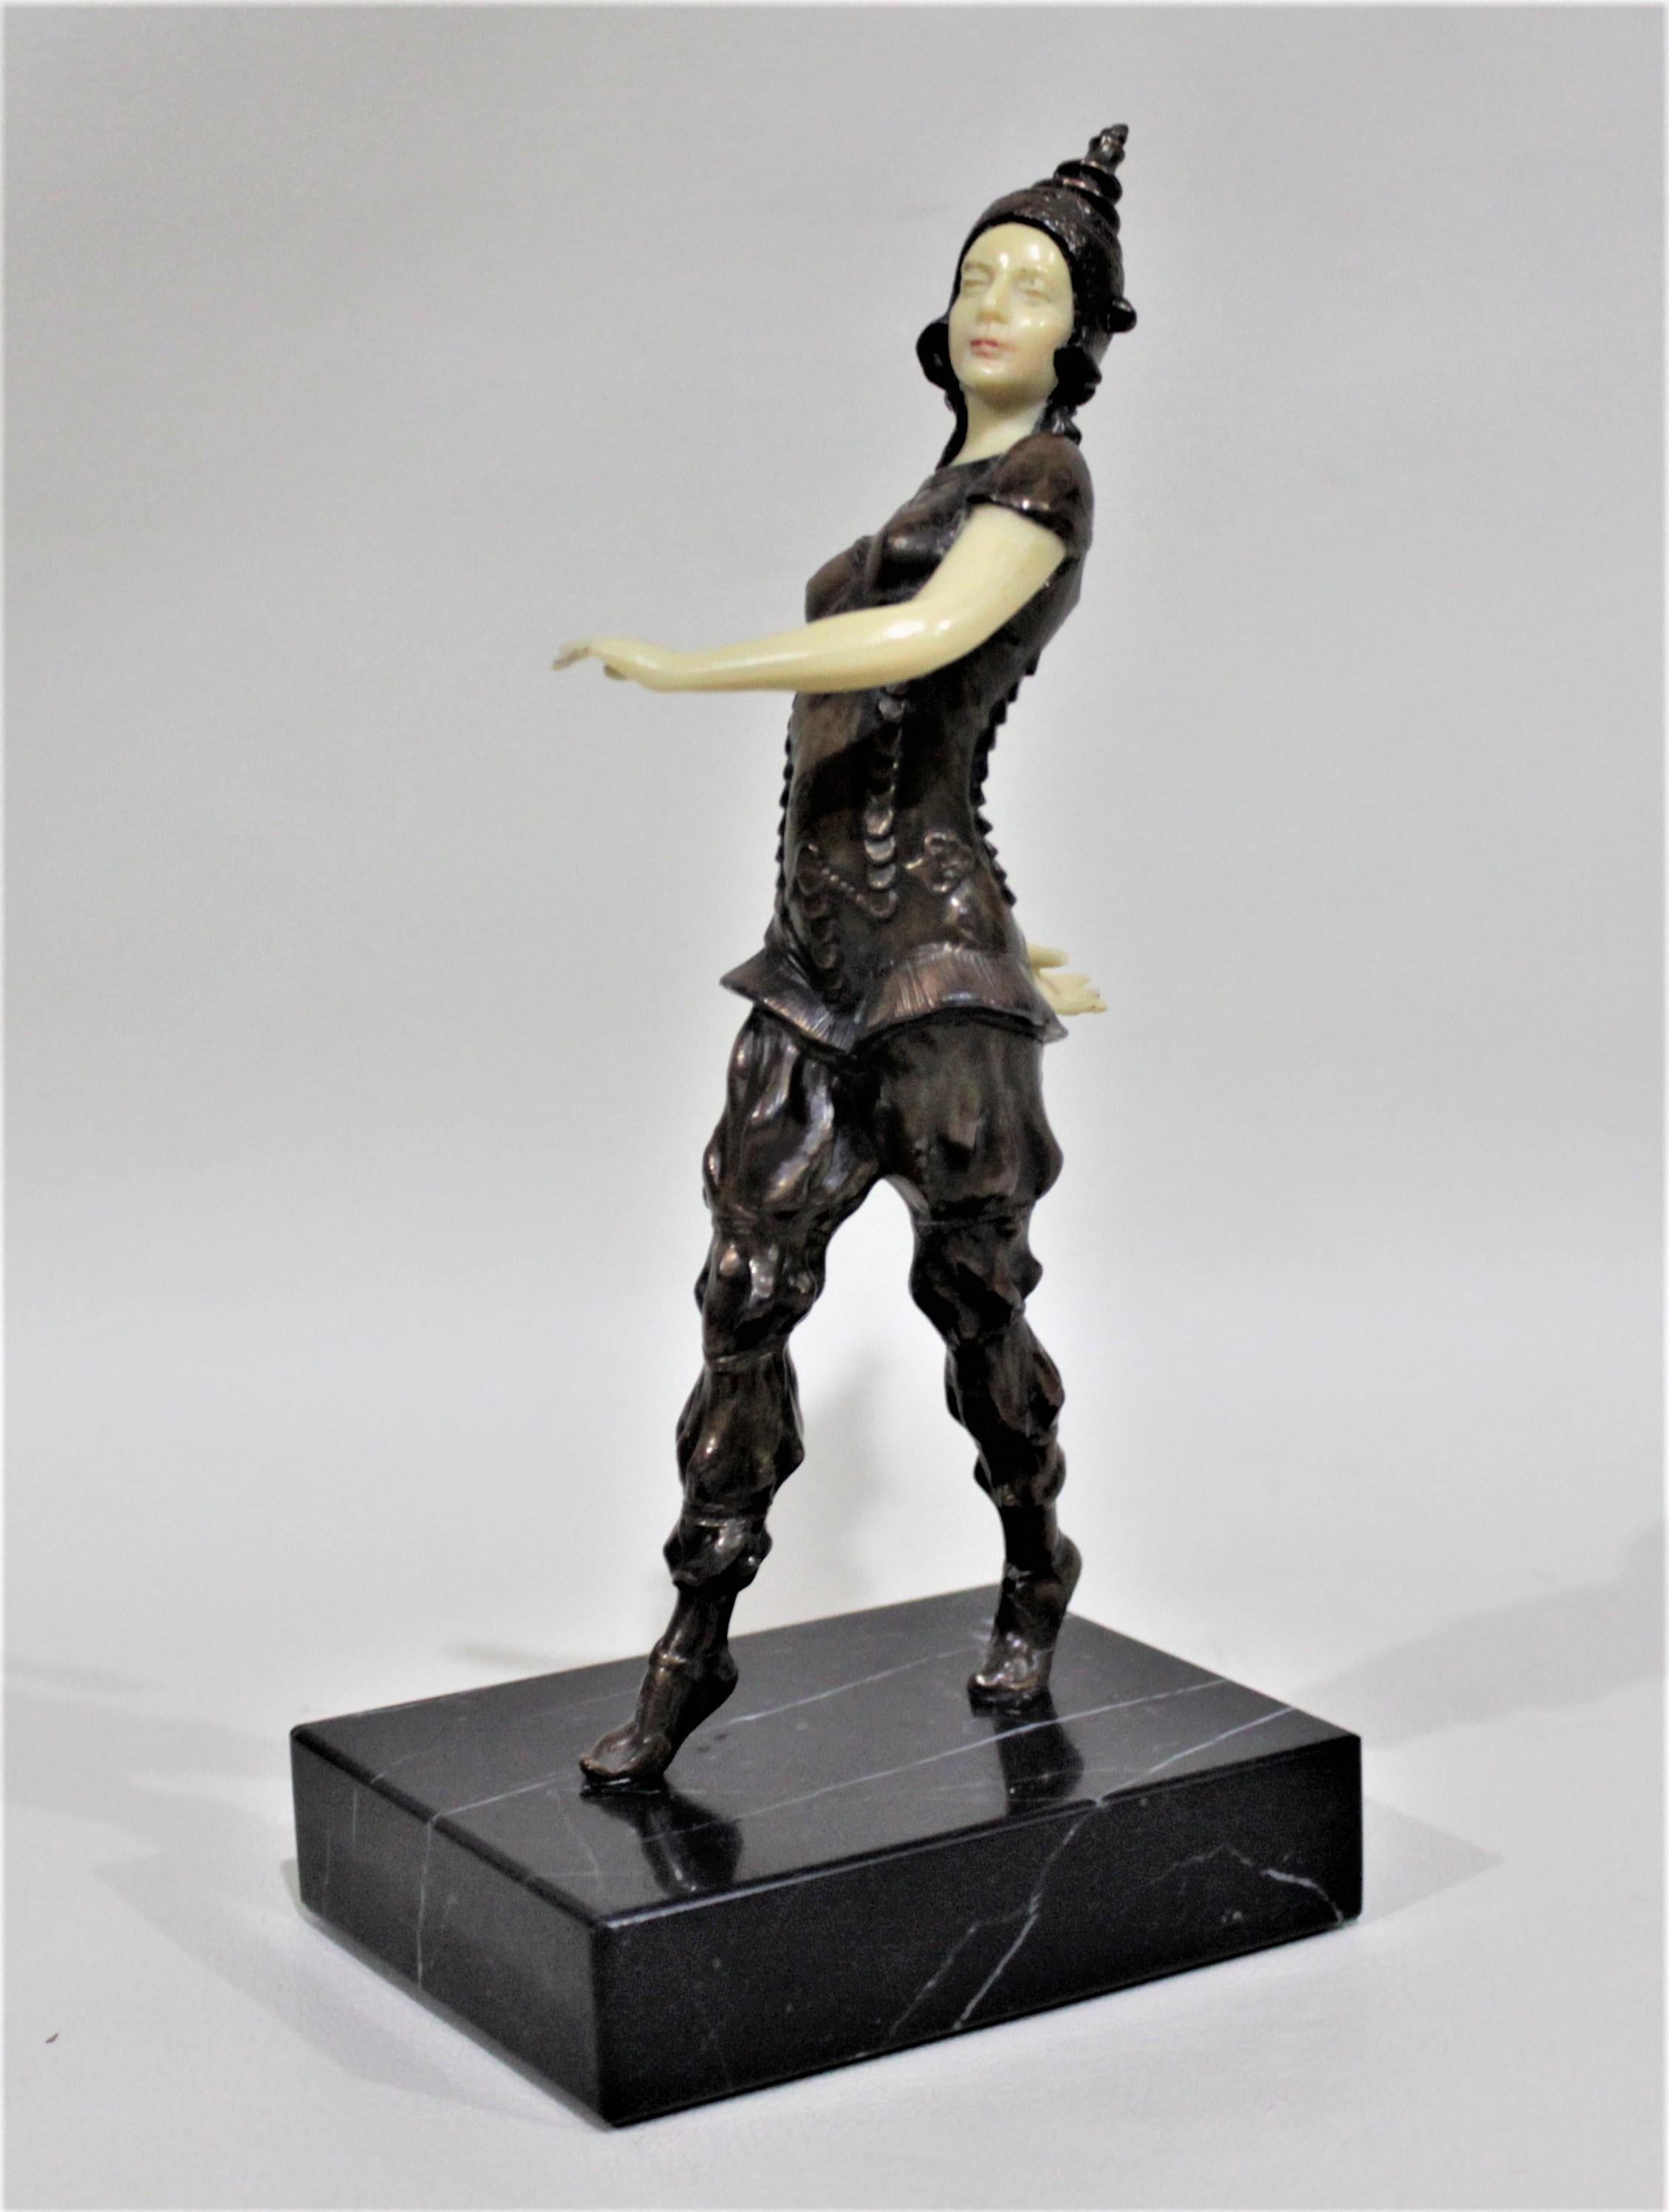 Diese detailreiche, patinierte Bronzefigur ist unmarkiert, wurde aber vermutlich um 1930 in Frankreich im Art-déco-Stil hergestellt. Diese Skulptur stellt eine thailändische Tänzerin in traditioneller Kleidung dar und steht auf einem polierten